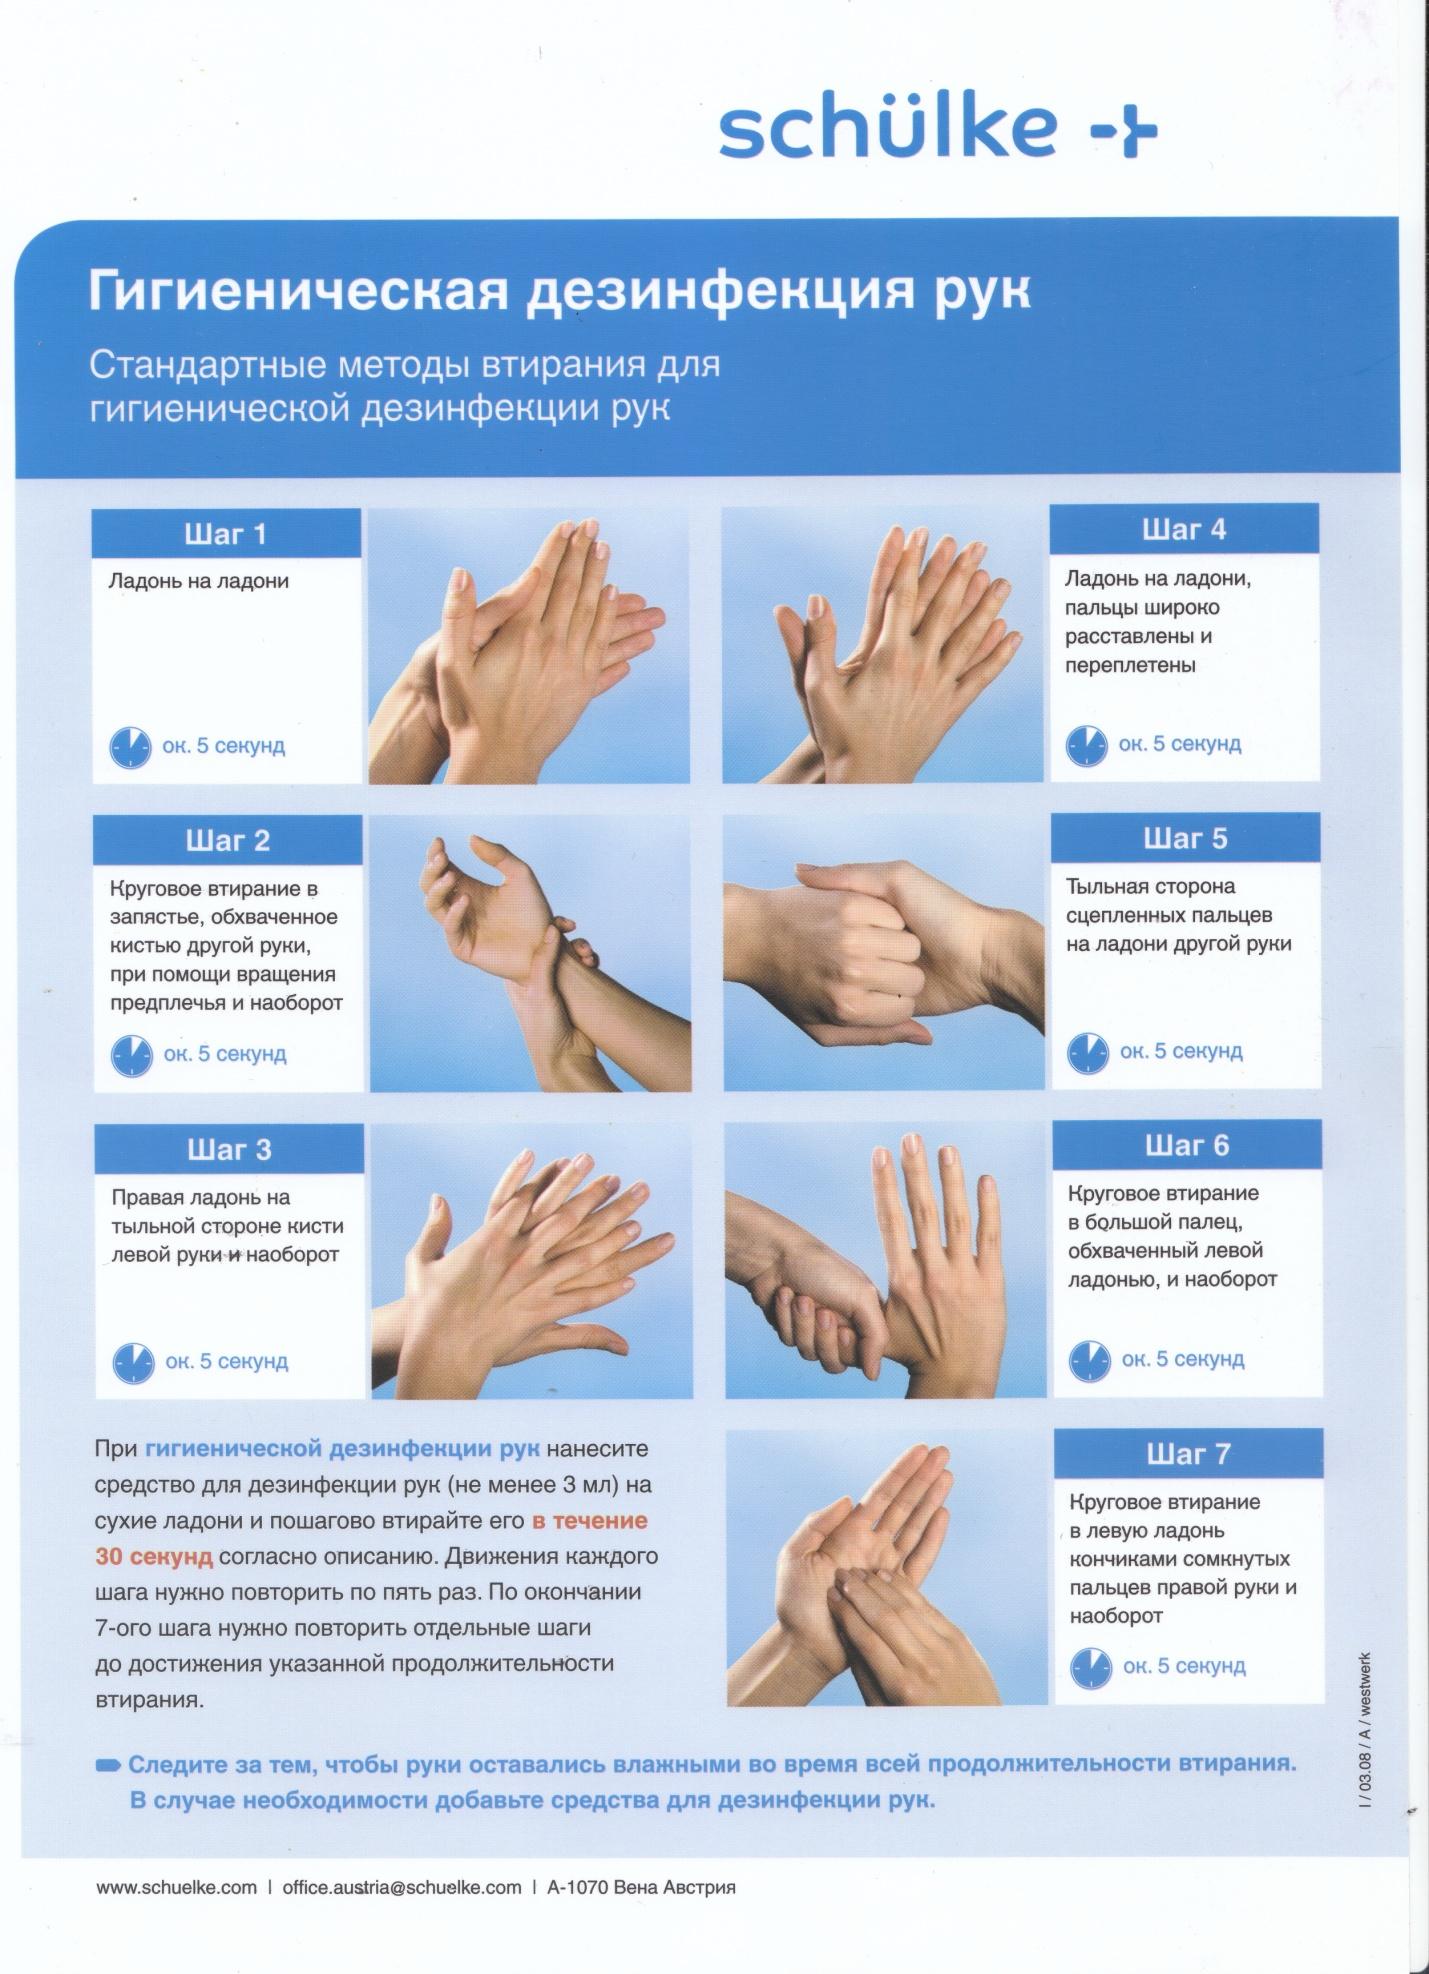 Стандарты гигиенической обработки рук. Гигиеническое мытье рук Европейский стандарт en-1500. Антисептическая обработка рук en-1500. Европейский стандарт еn-1500. Профессиональная обработка рук Европейский стандарт en-1500.